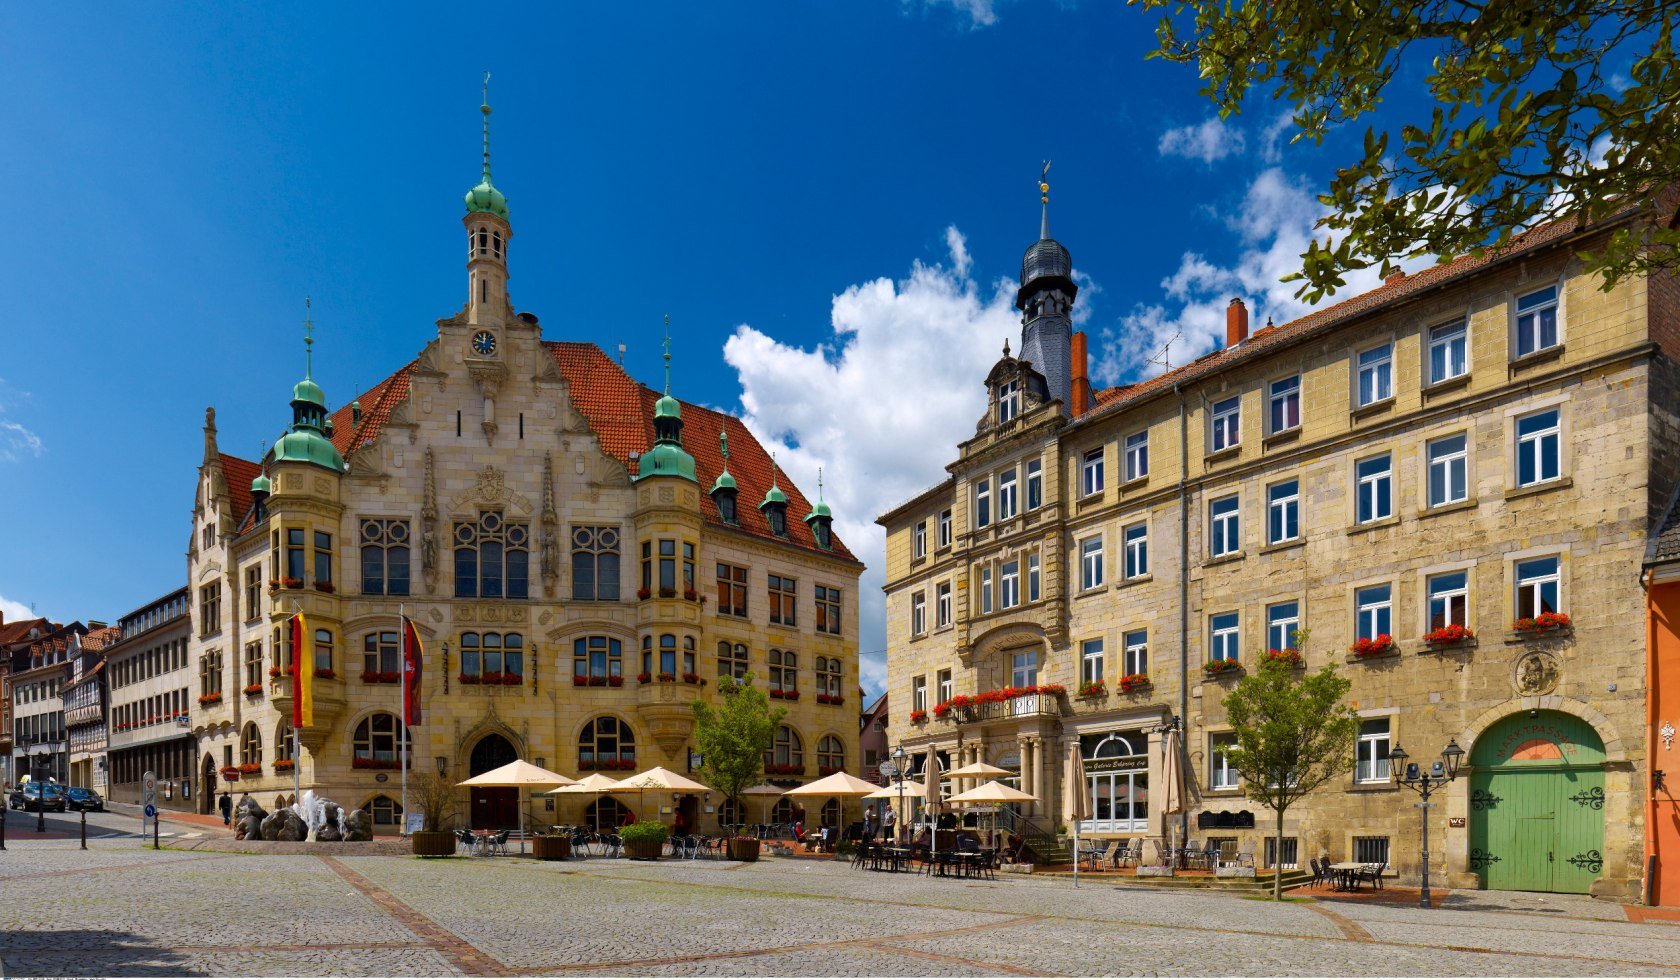 Marktplatz mit Rathaus in Helmstedt, Niedersachsen, Deutschland, © TMN/Huber Media